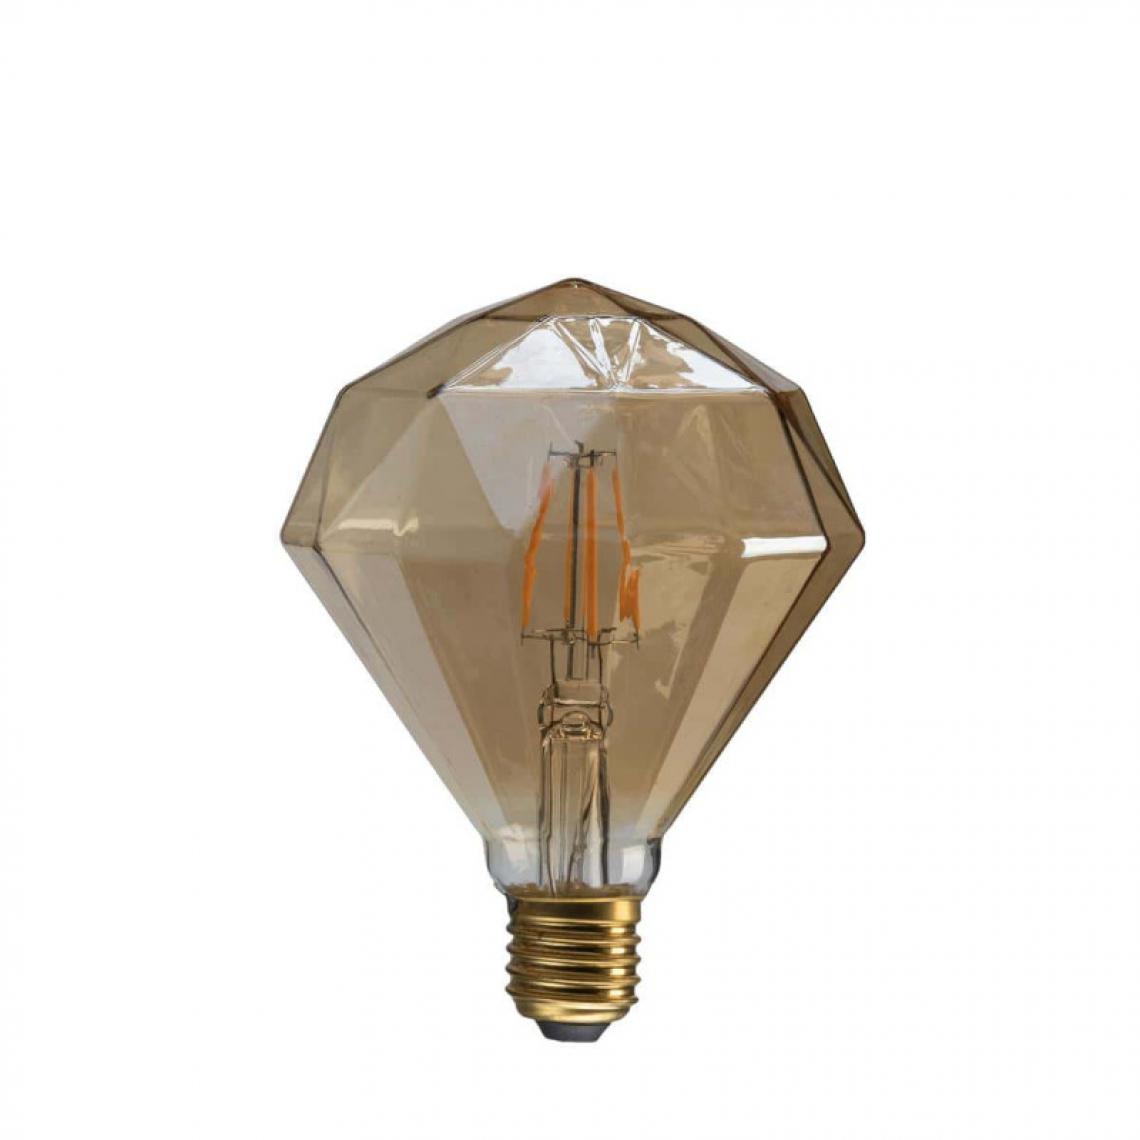 Xxcell - Ampoule LED diamant rond ambrée XXCELL - 7 W - 720 lumens - 2700 K - E27 - Ampoules LED